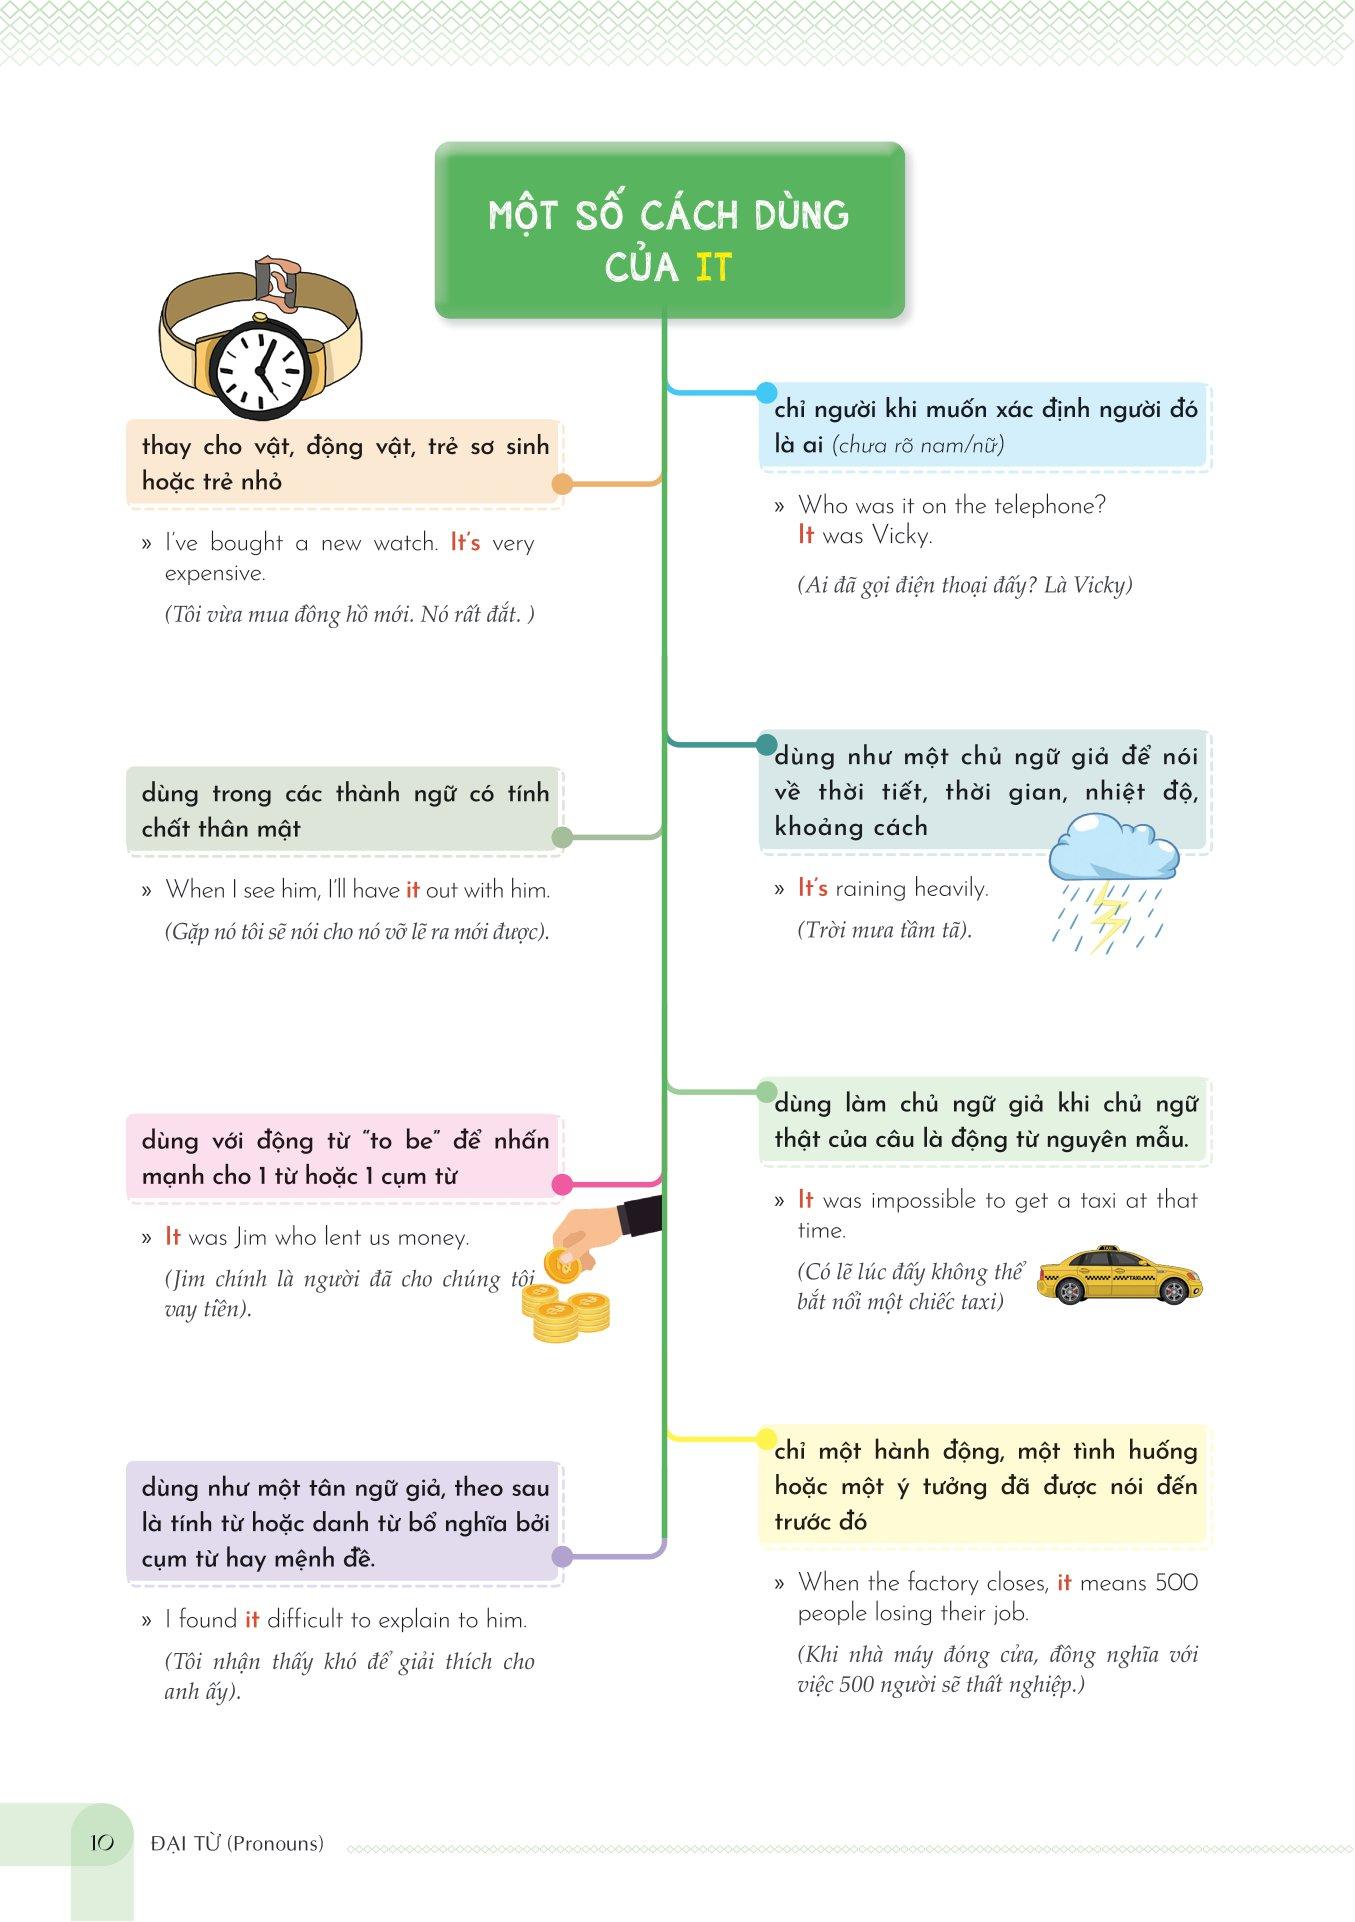 Mind Map English Grammar Explanation - Giải Thích Ngữ Pháp Tiếng Anh Bằng Sơ Đồ Tư Duy